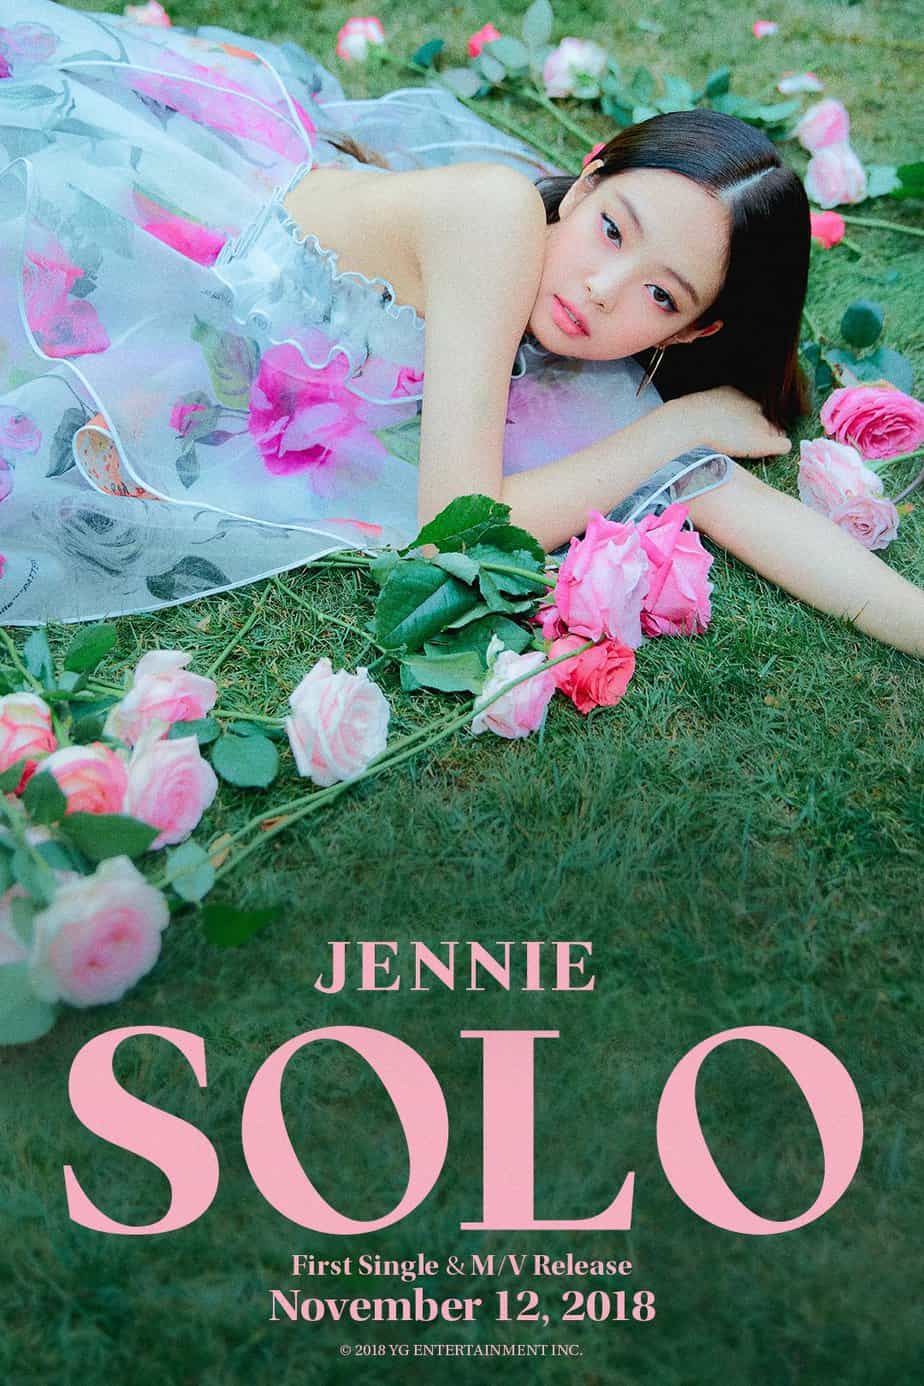 Jennie SOLO cover photo.